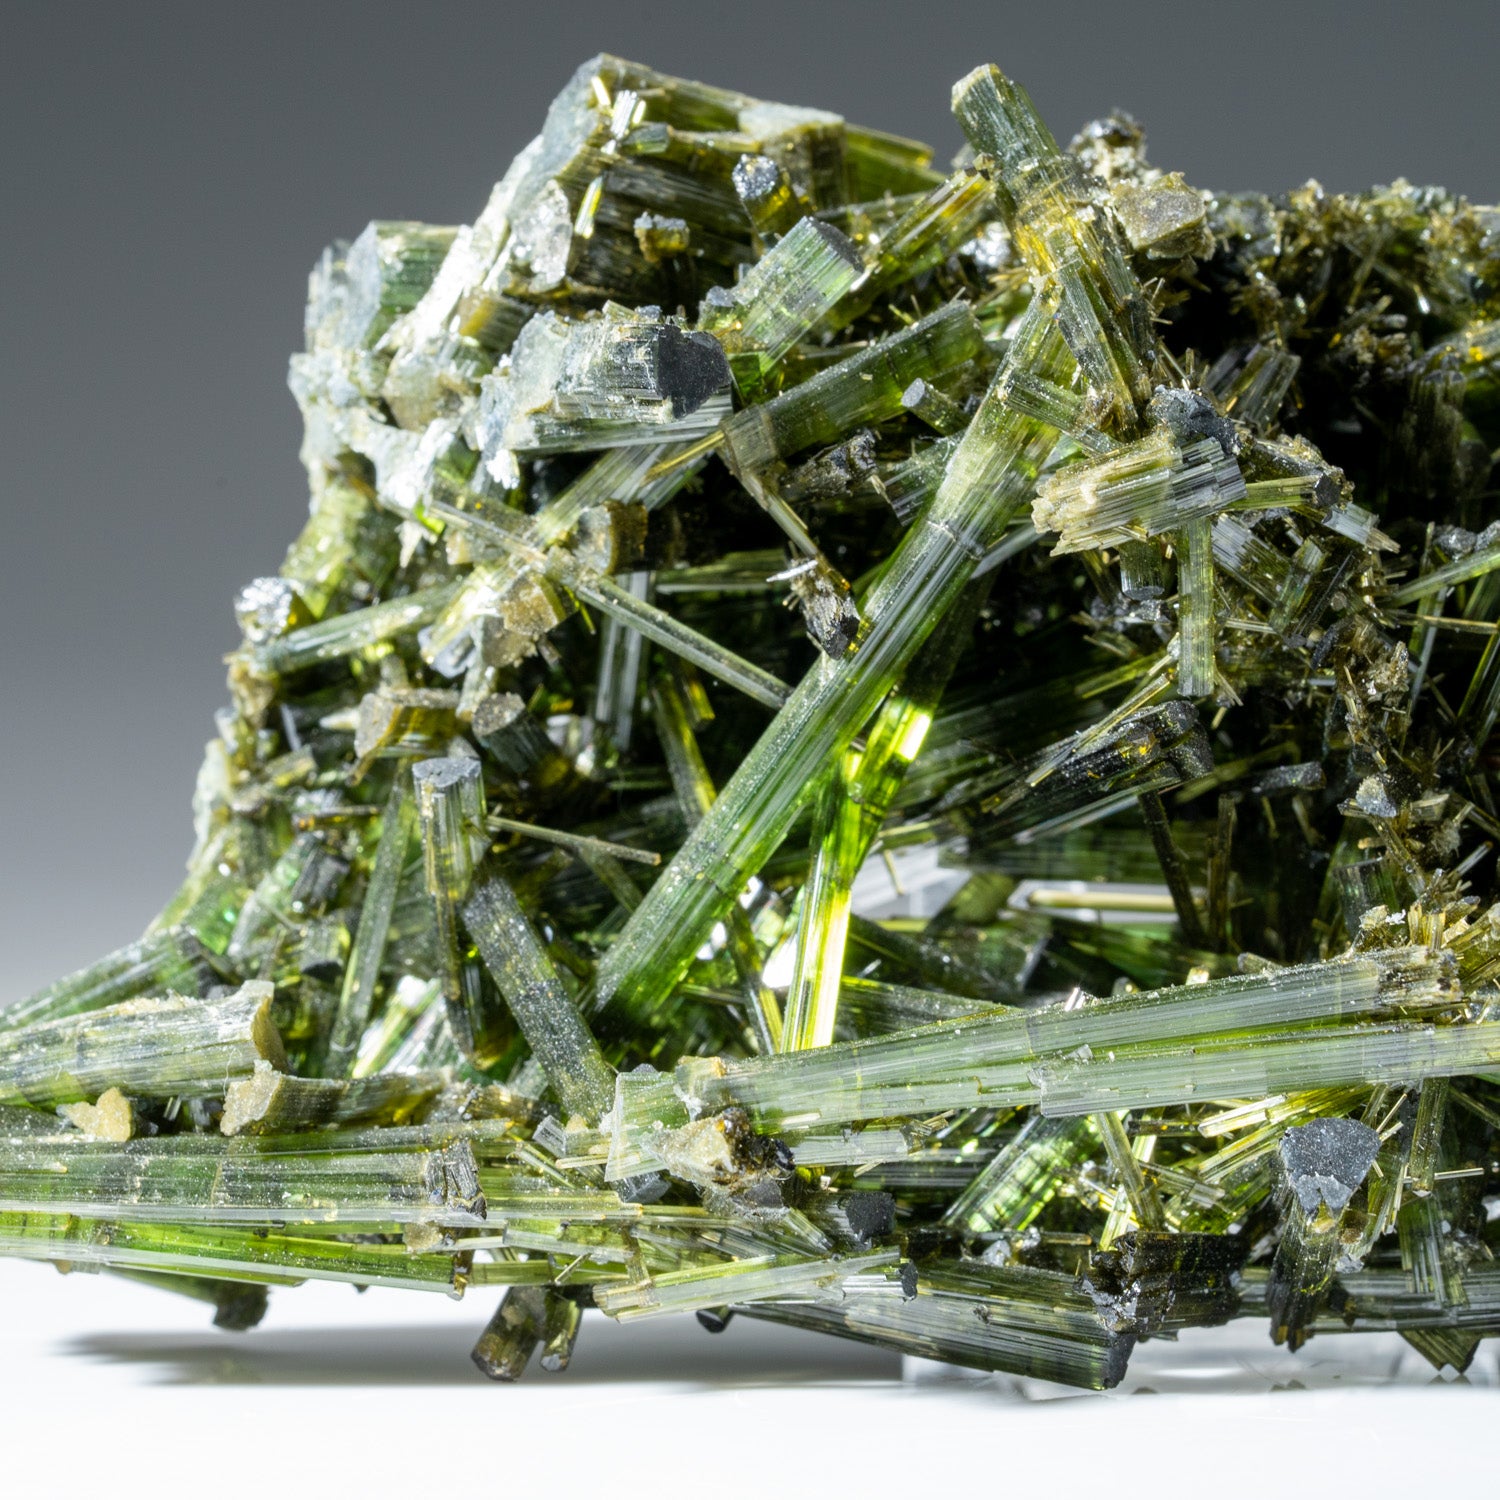 Green Tourmaline Crystal from Cruzeiro Mine, Governador Valadares, Minas Gerais, Brazil